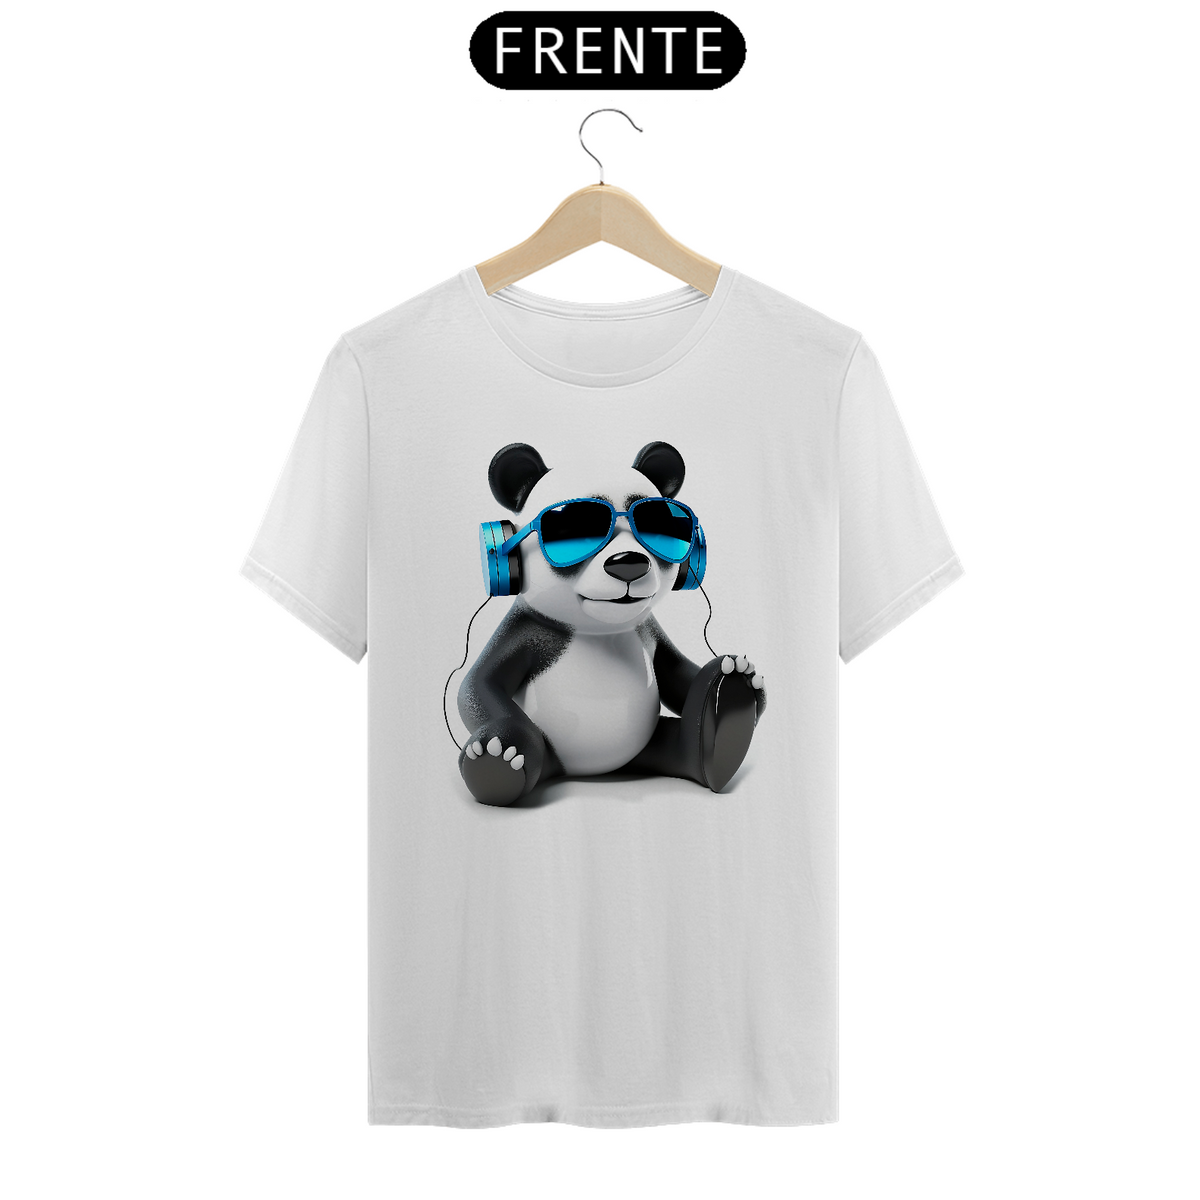 Nome do produto: Panda em seus headphones! / Quality White